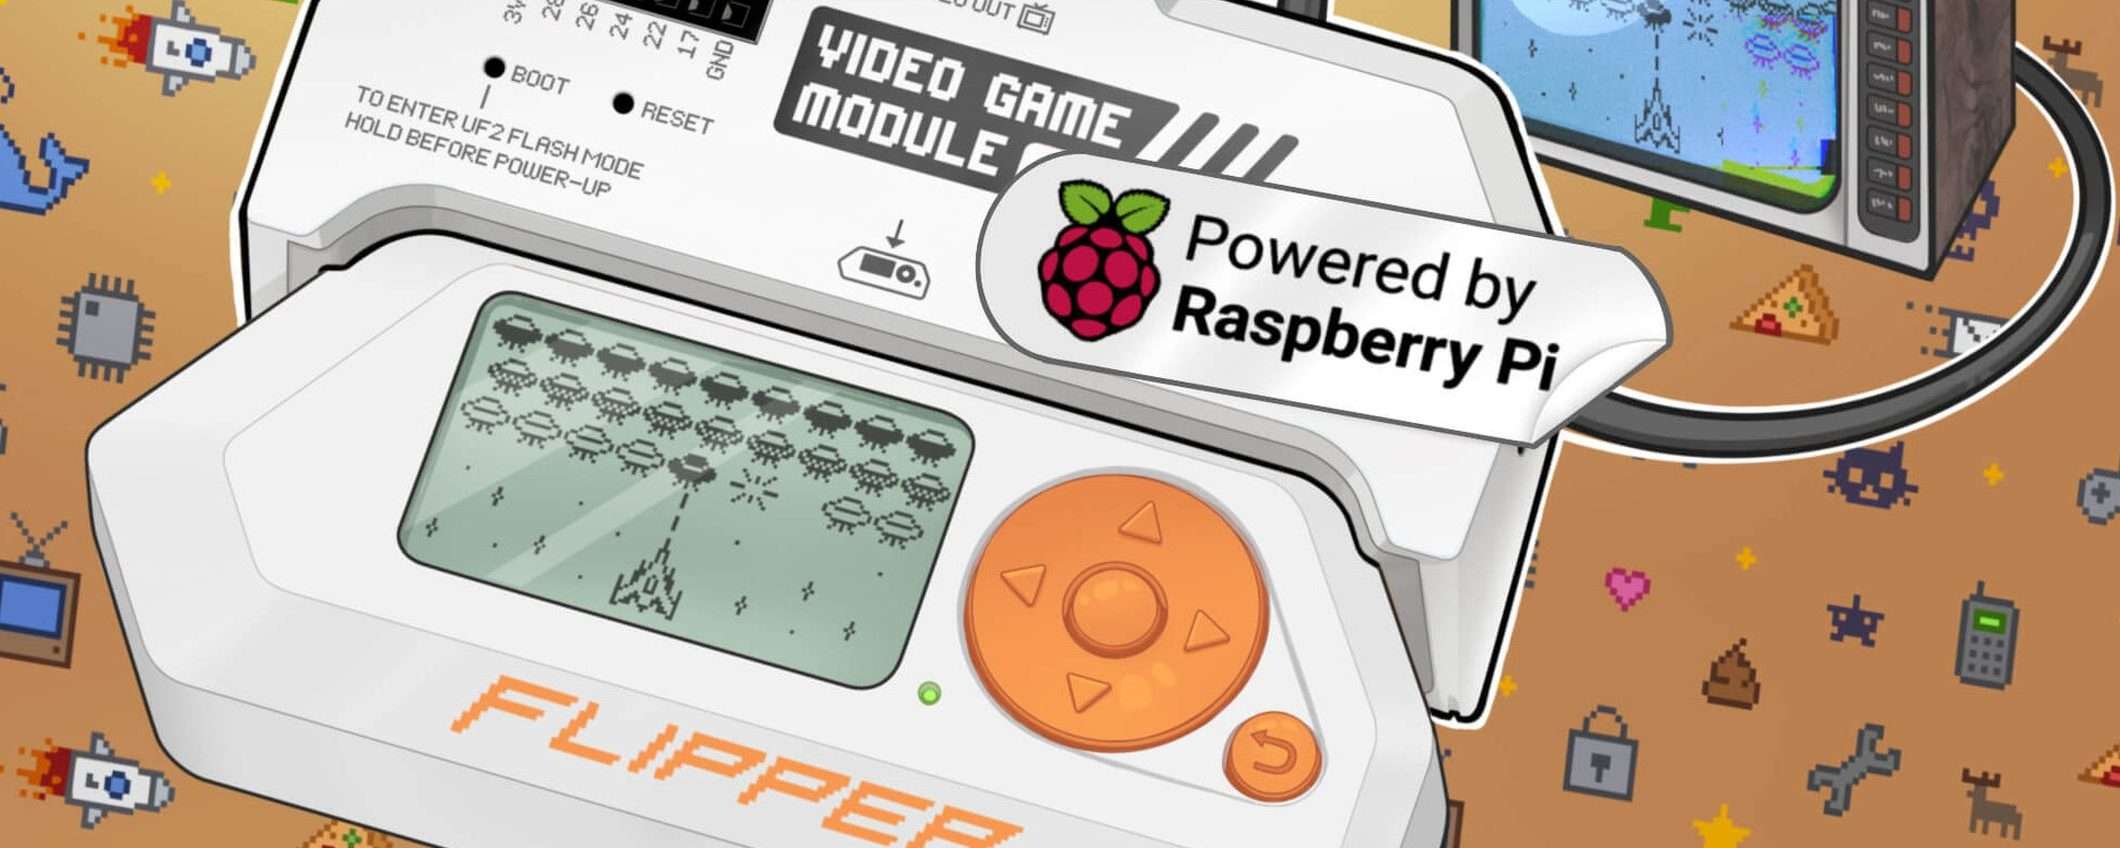 Flipper Zero: Video Game Module con Raspberry Pi